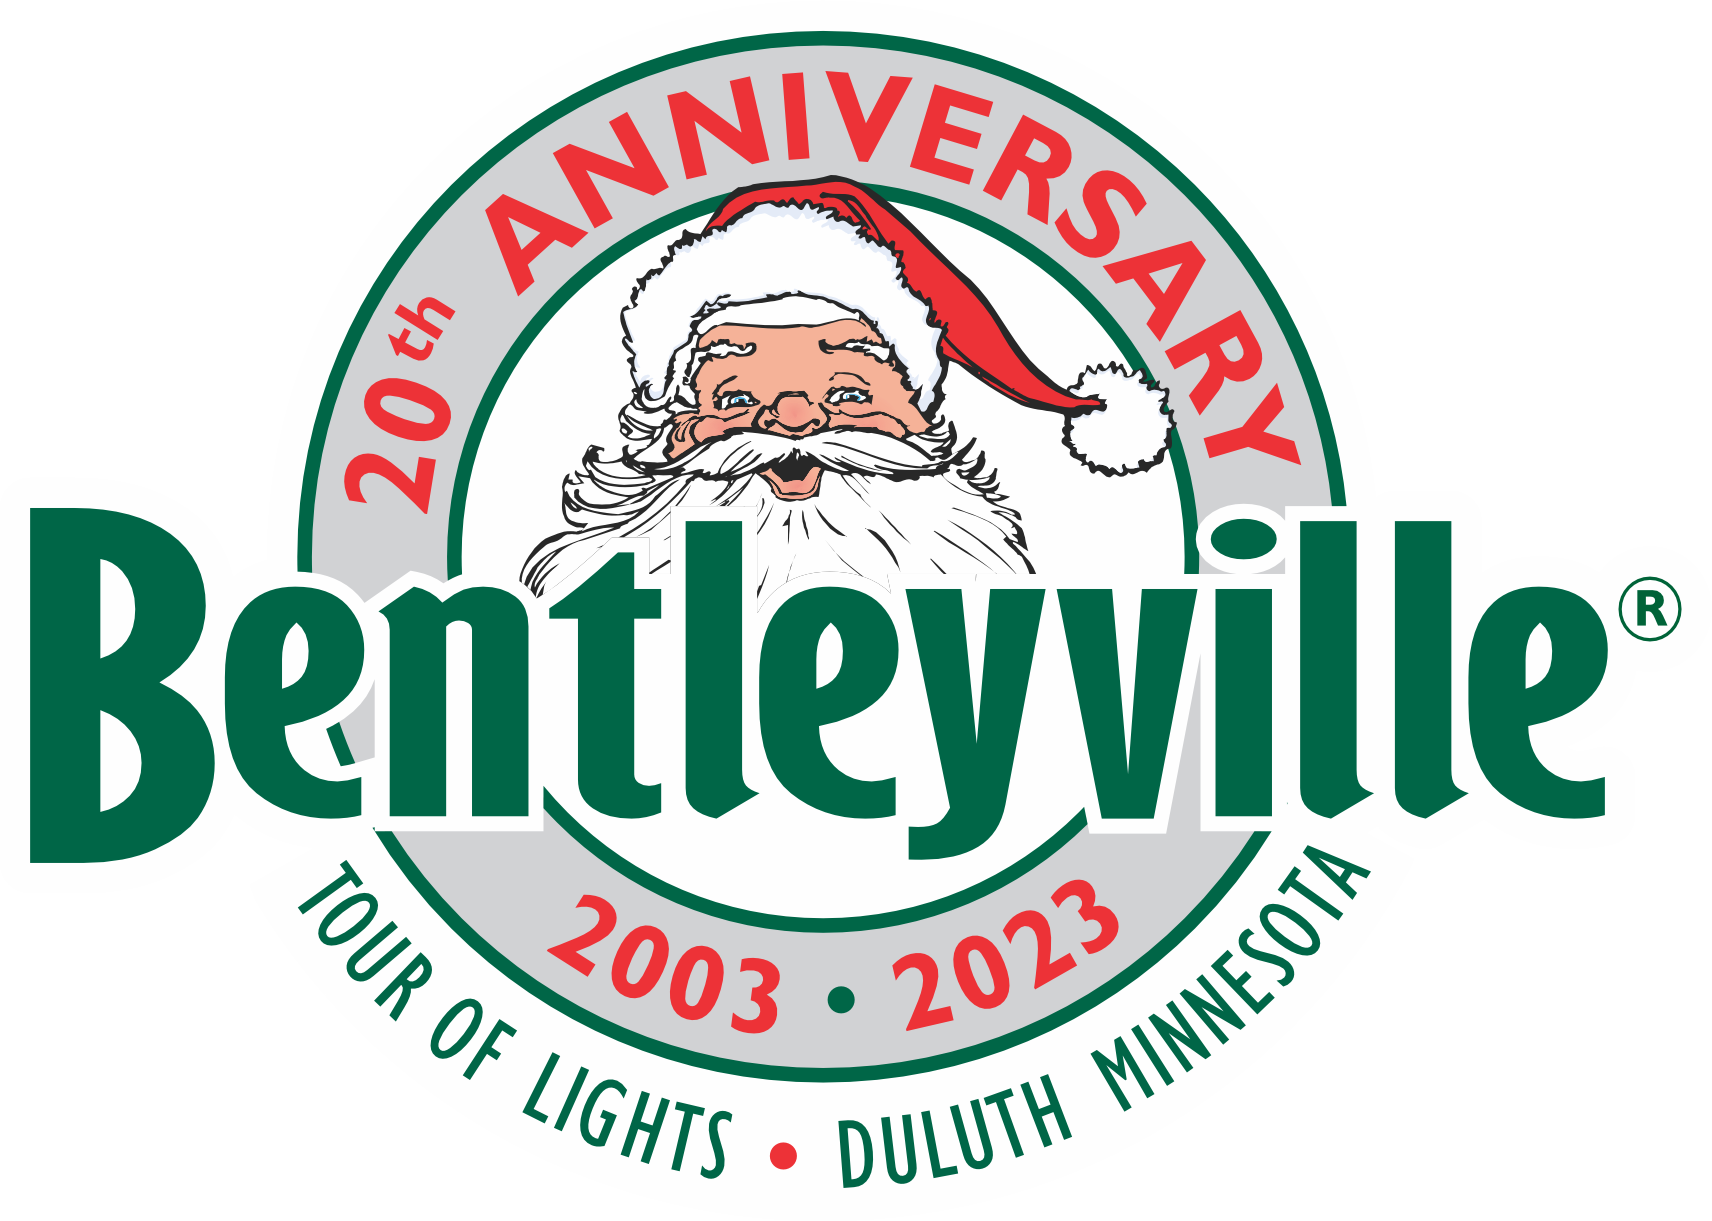 Bentleyville "Tour of Lights"